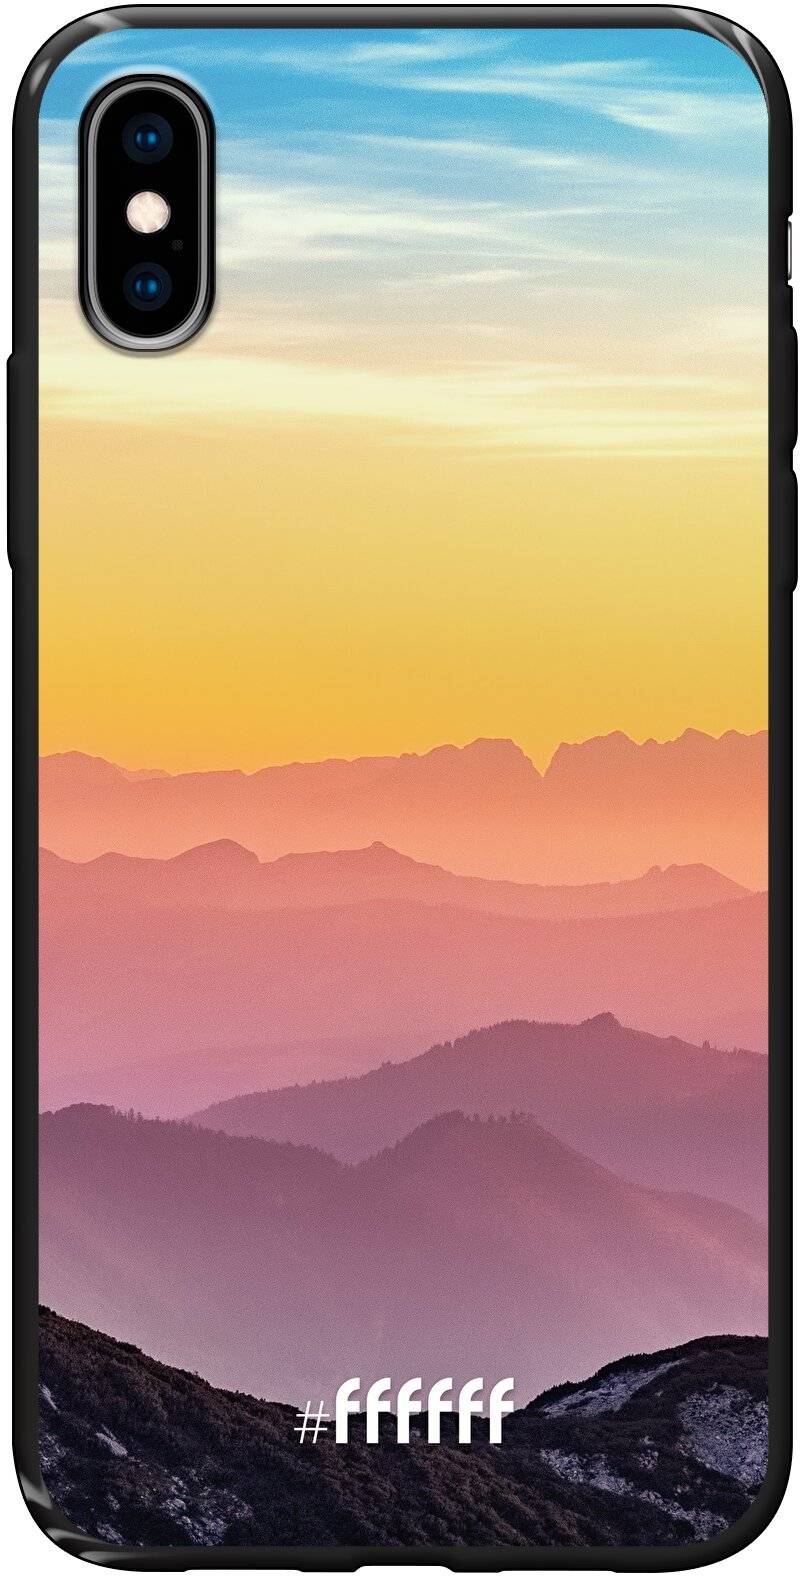 Golden Hour iPhone X